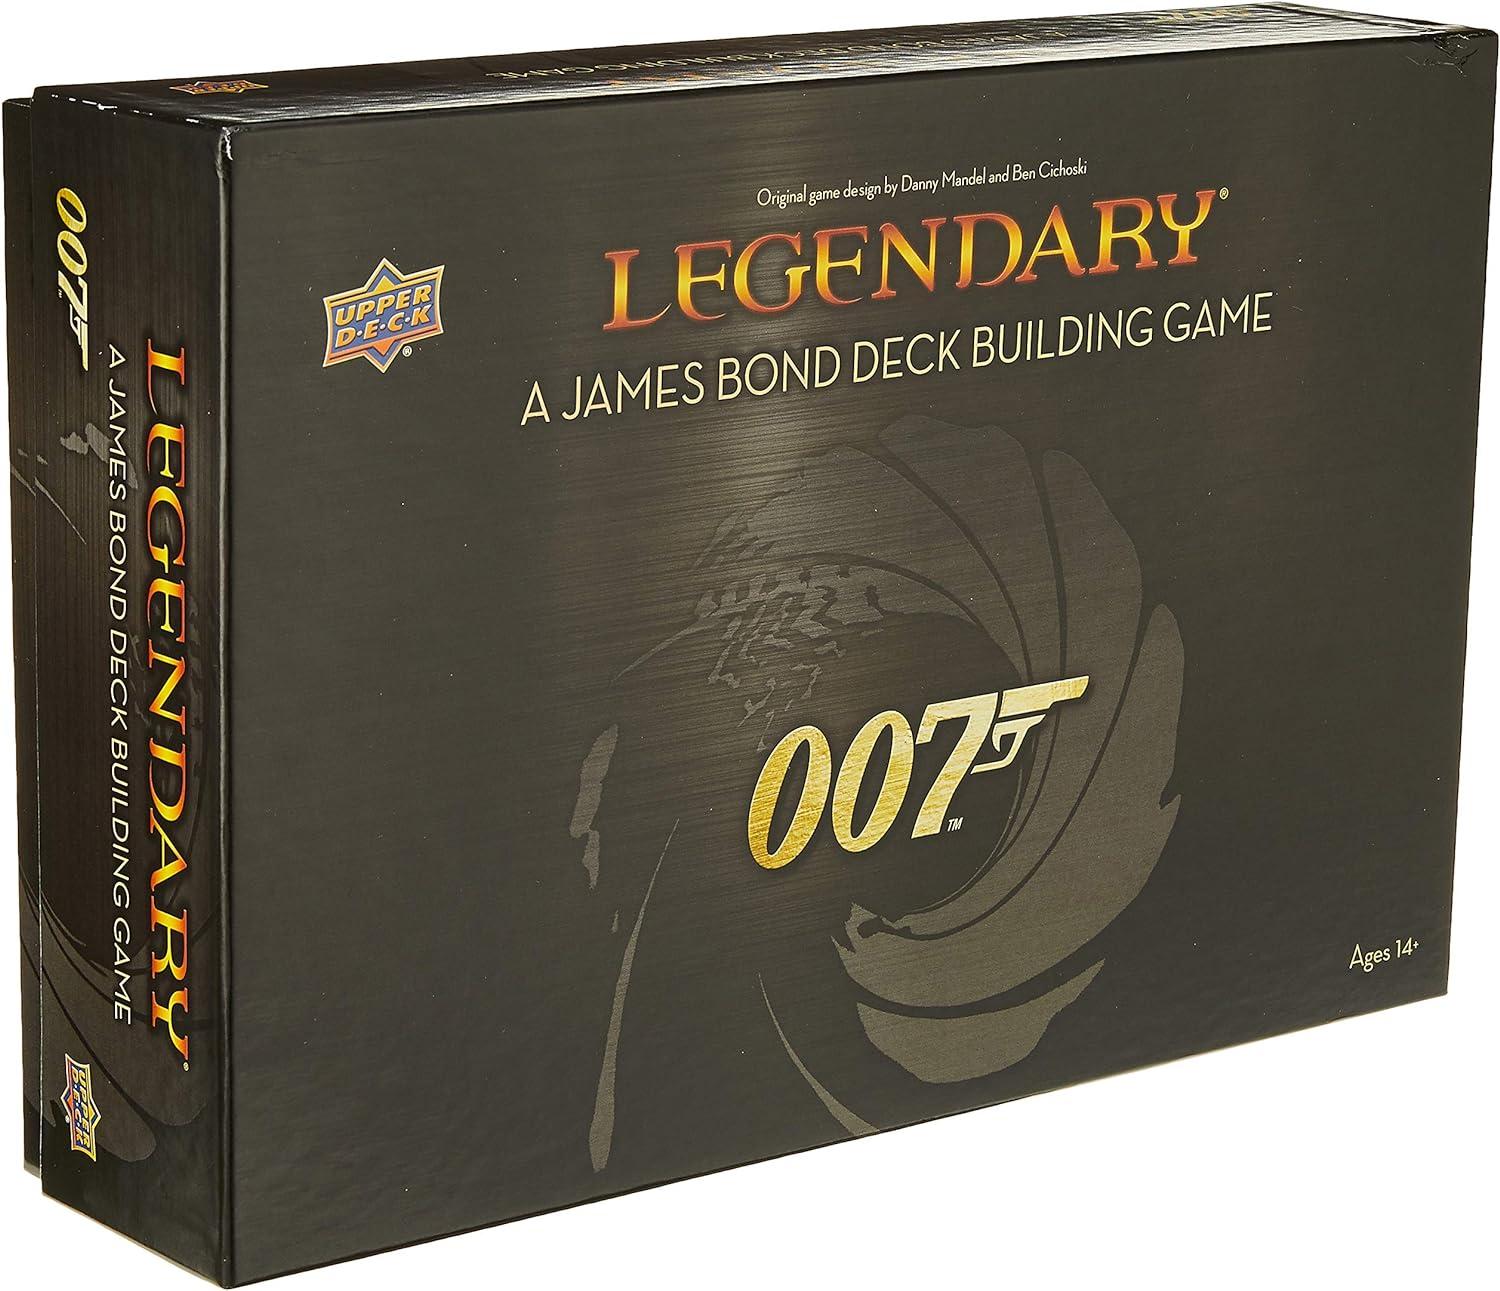 Upper Deck 2019 Legendary 007 James Bond Deck-Building Game for $27.99